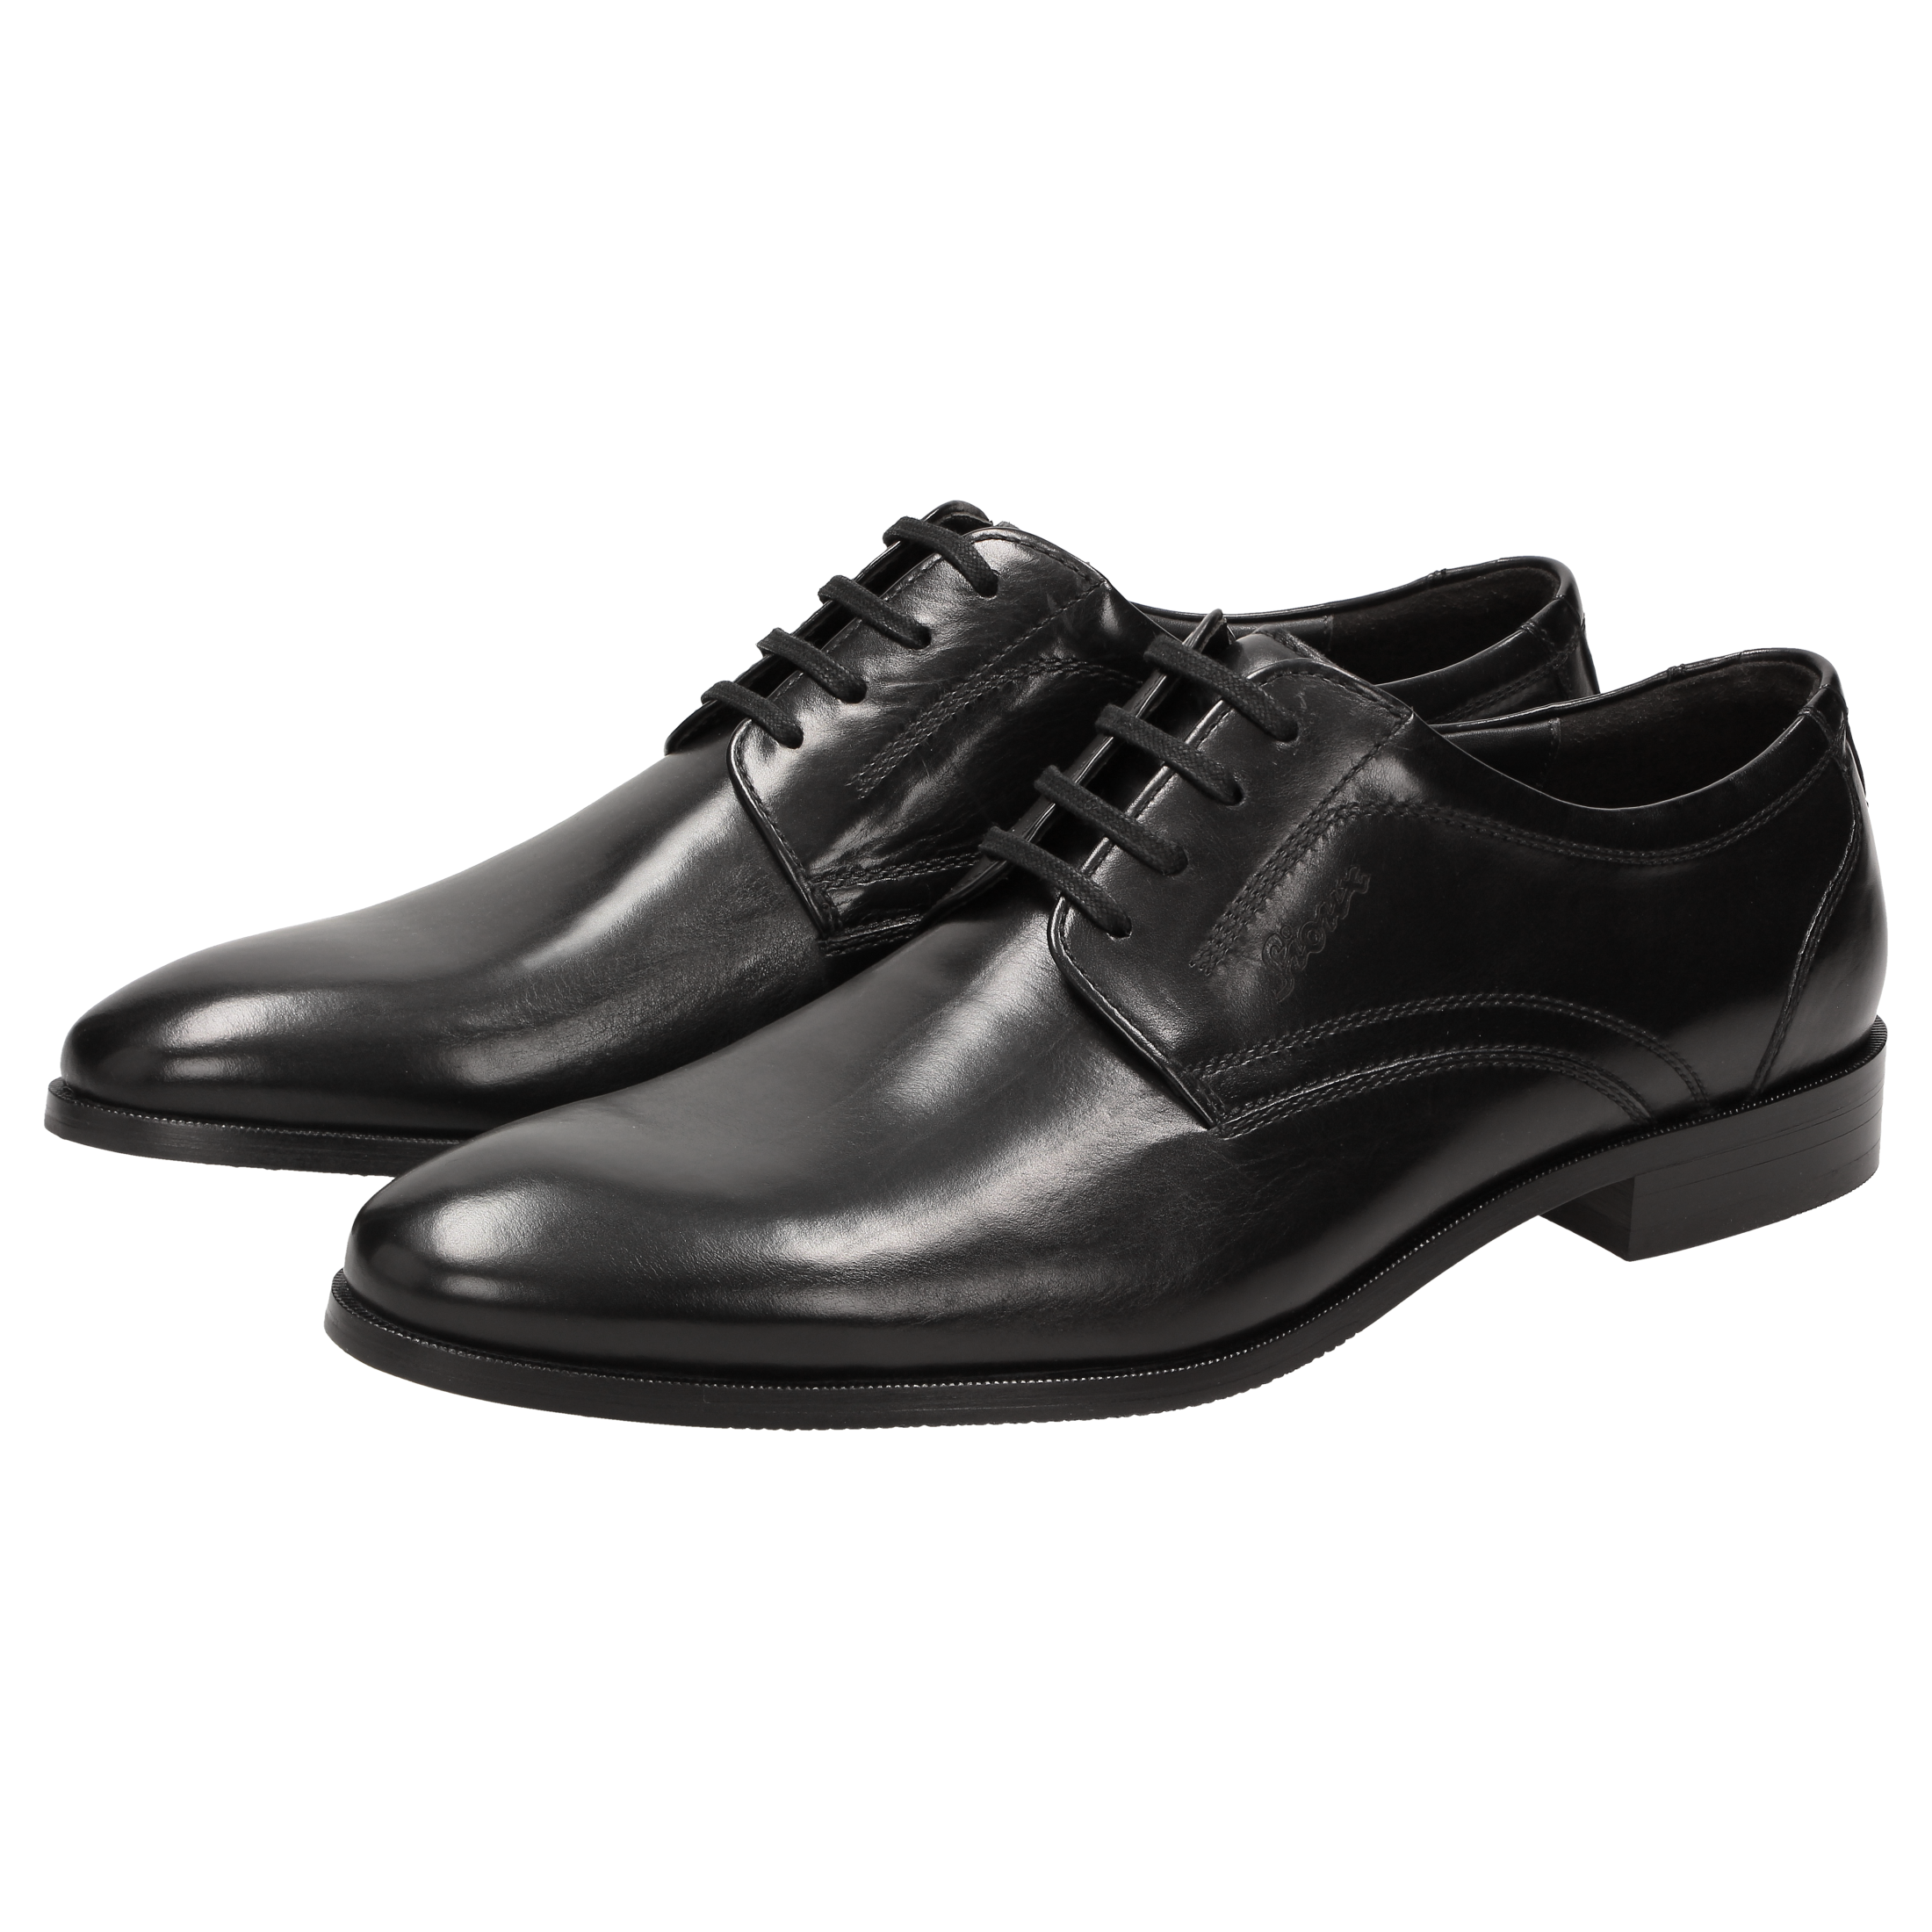 Geox Leder Klassische Schnürschuhe in Schwarz für Herren Herren Schuhe Schnürschuhe Oxford Schuhe 